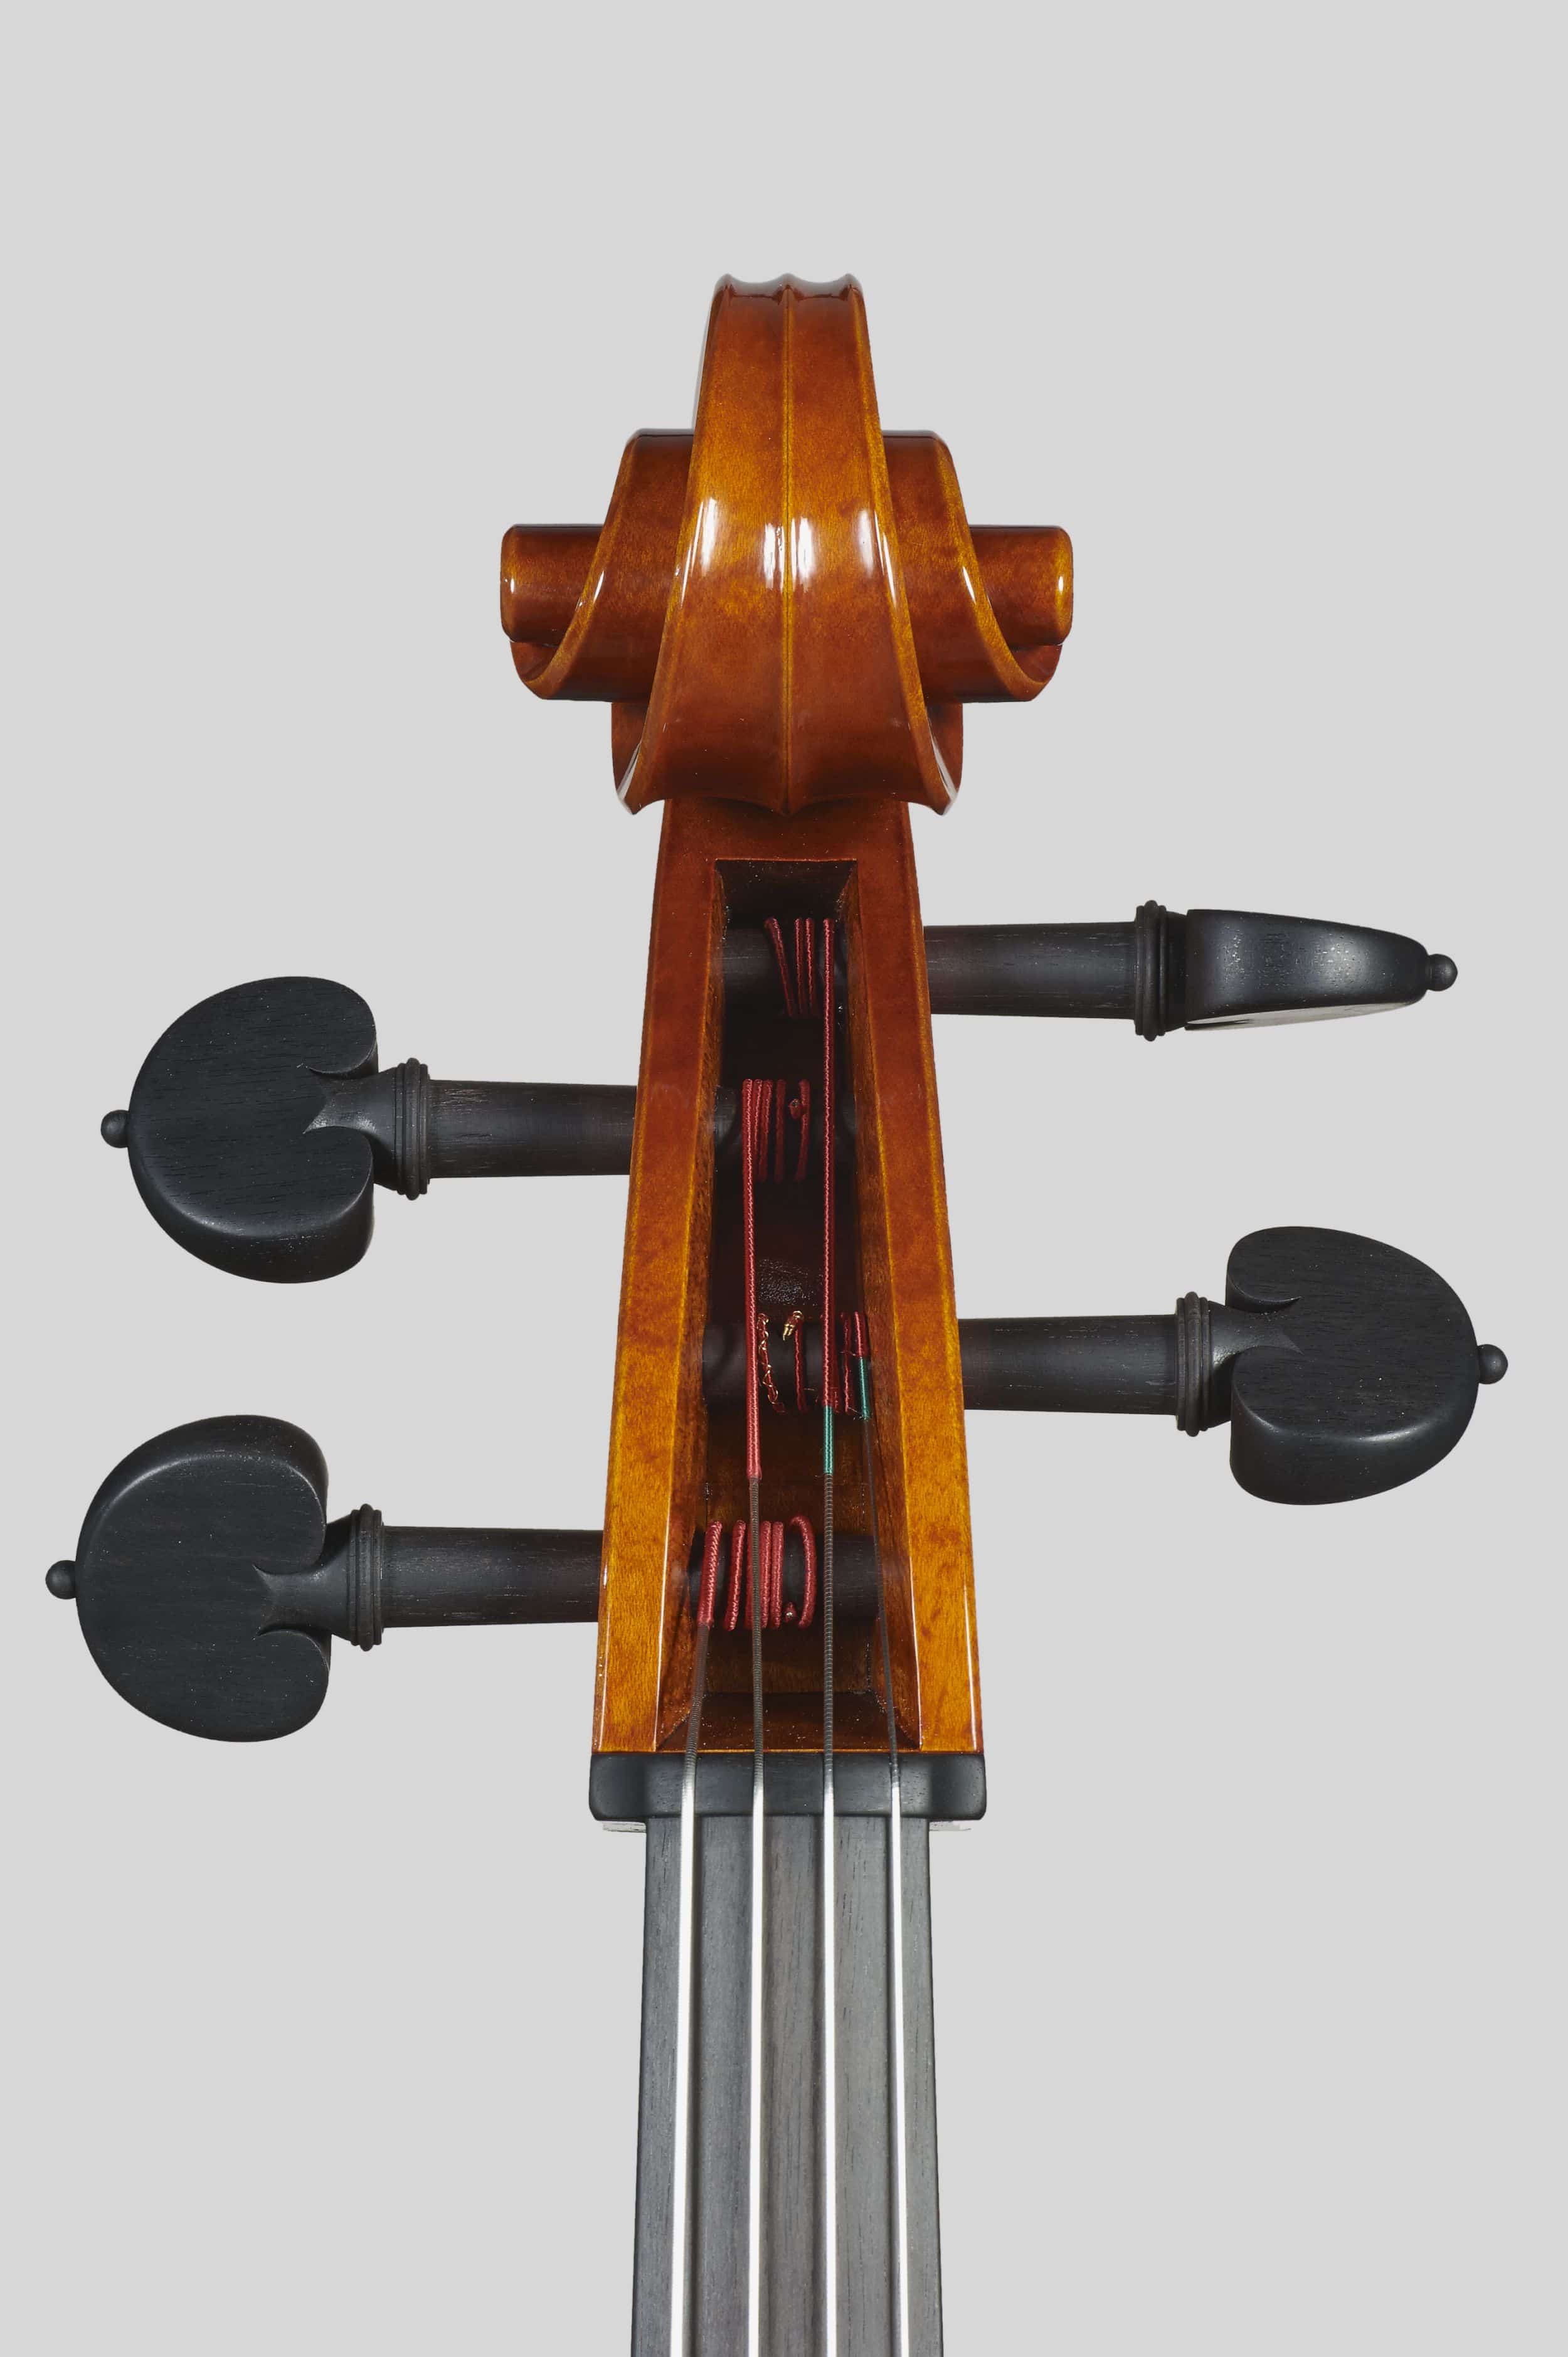 Anno 2012 – Violoncello modello stile A. Stradivari “forma B” - “Mara” 1711 - Testa fronte